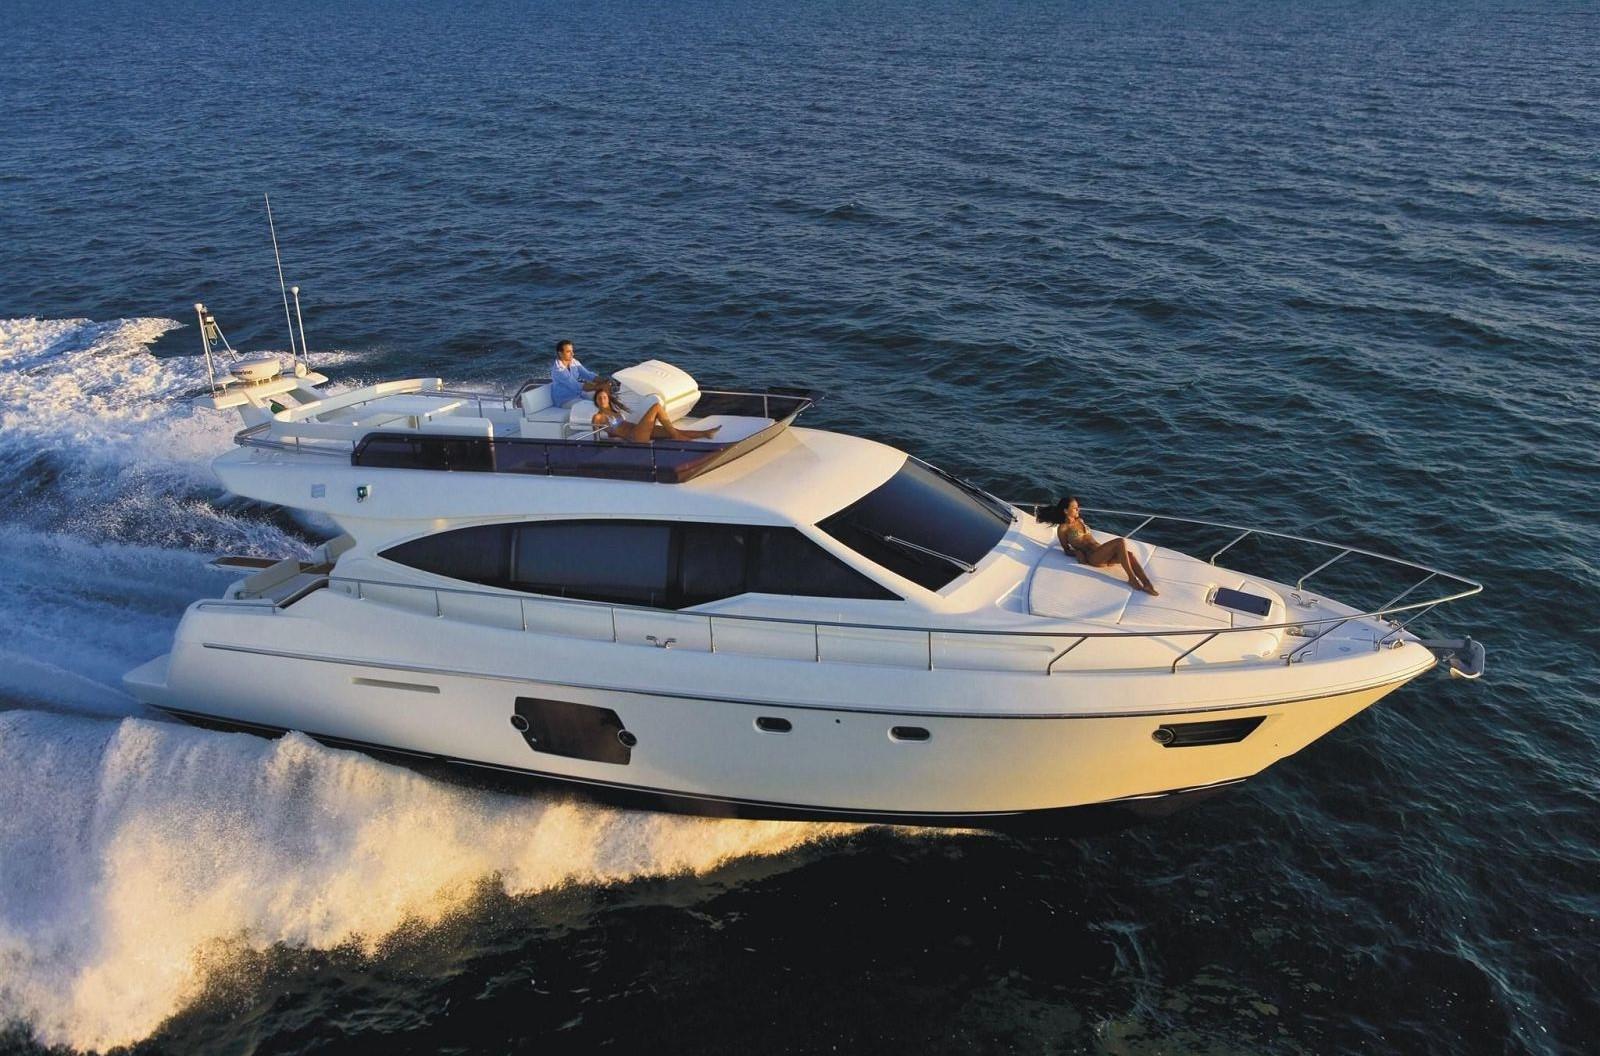 2013 Ferretti Yachts 530